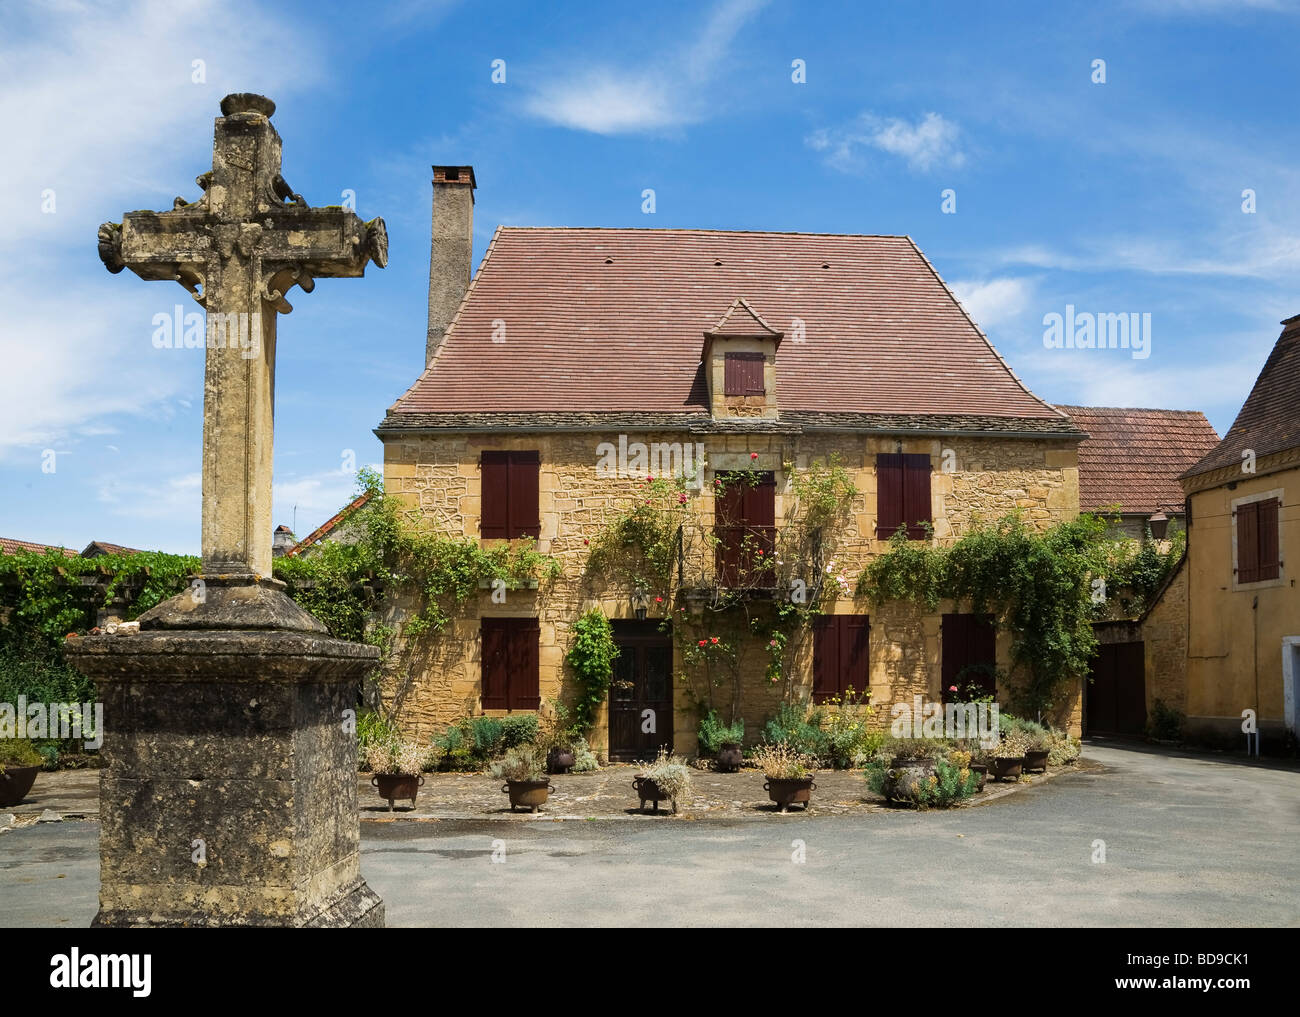 Maison de village et traverser Saint Leon sur Vezere Dorgogne France Banque D'Images